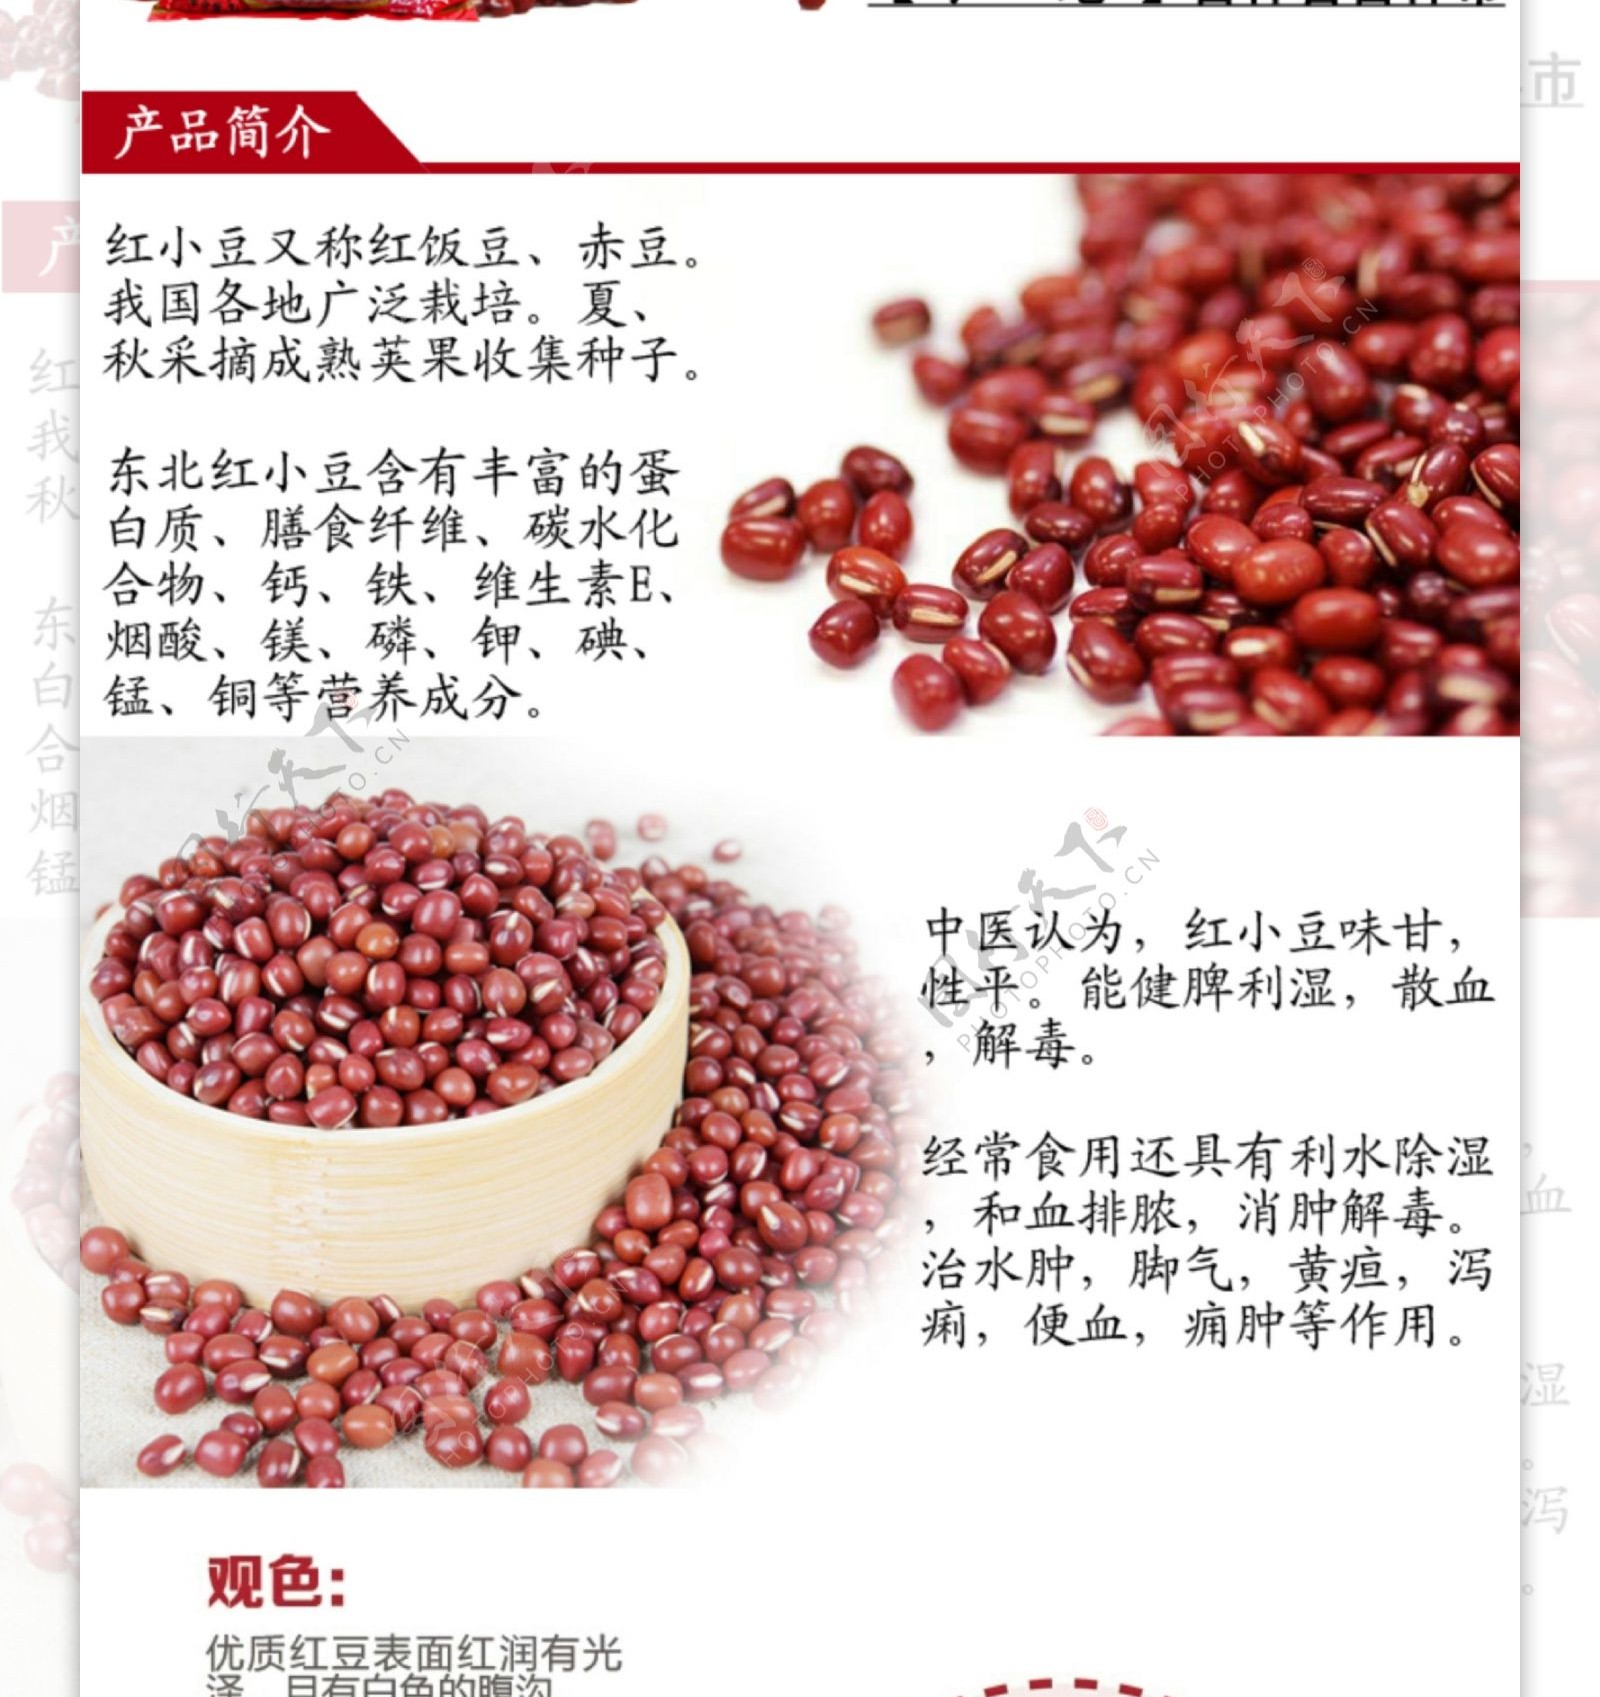 红豆农产品红小豆详情页图片